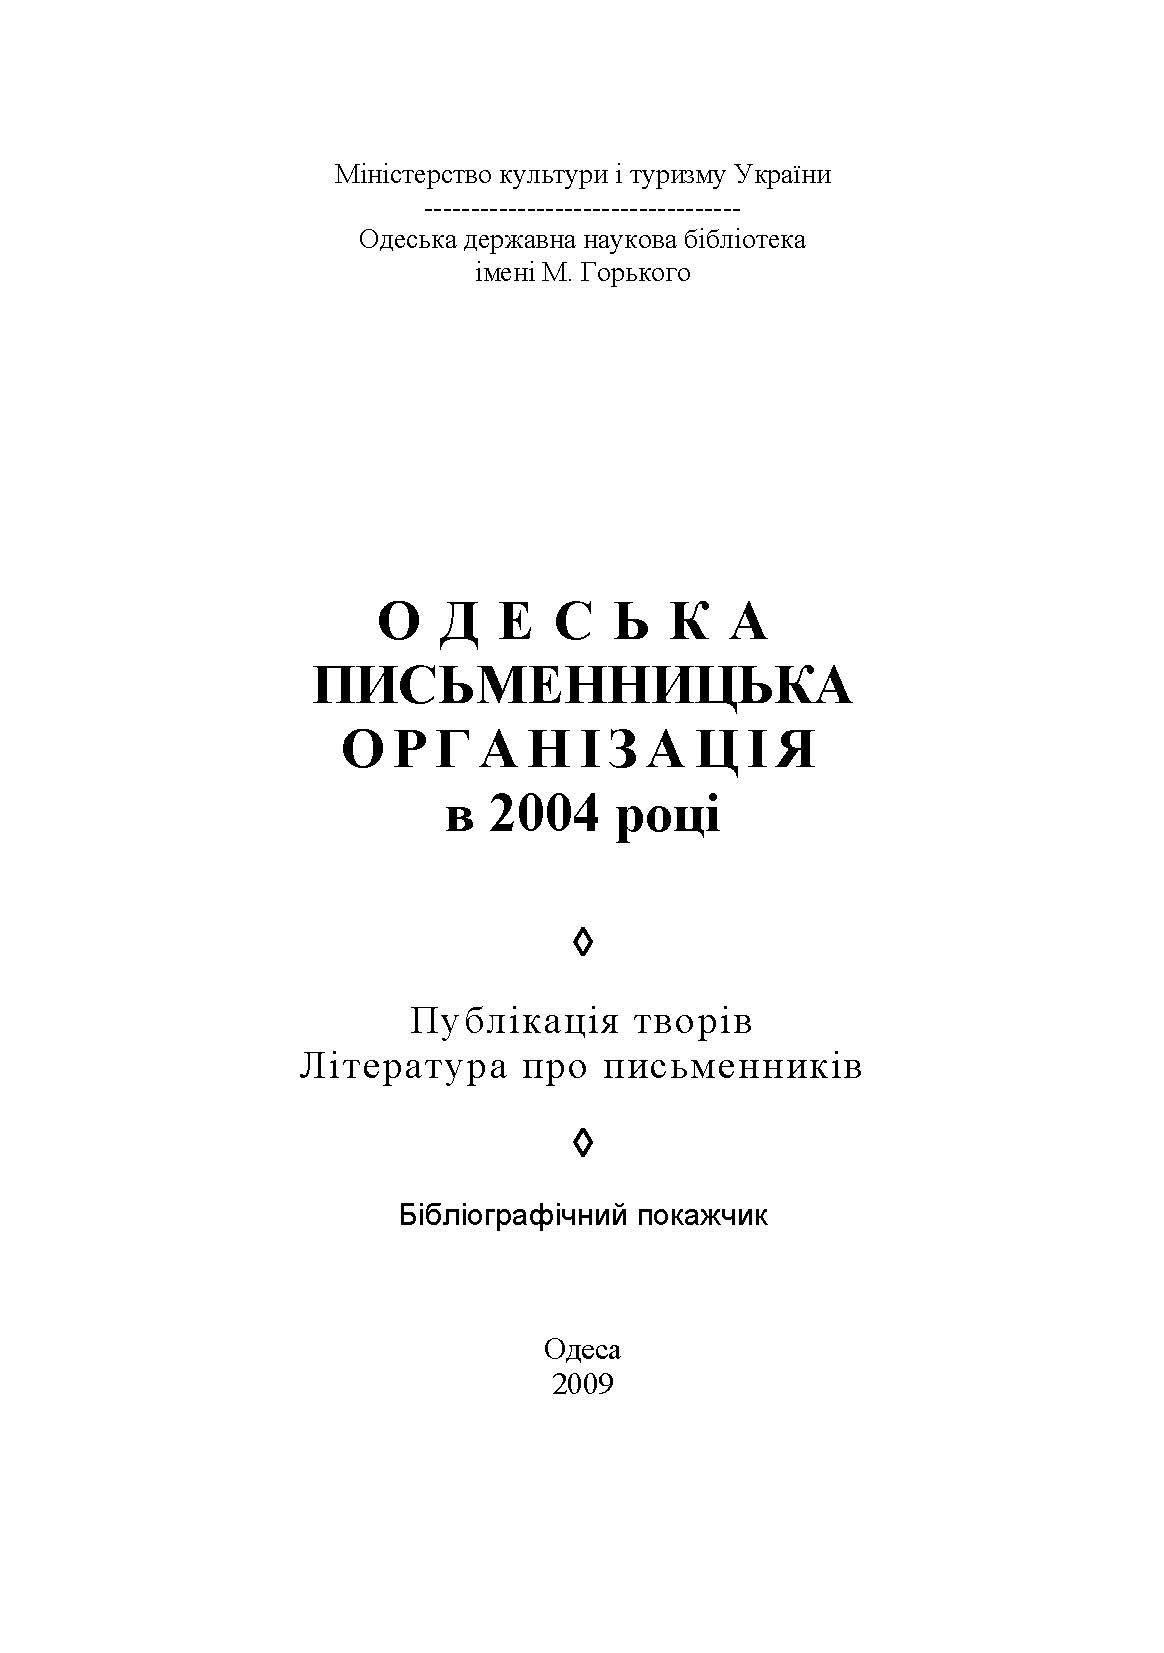 Одеська письменницька організація в 2004 році